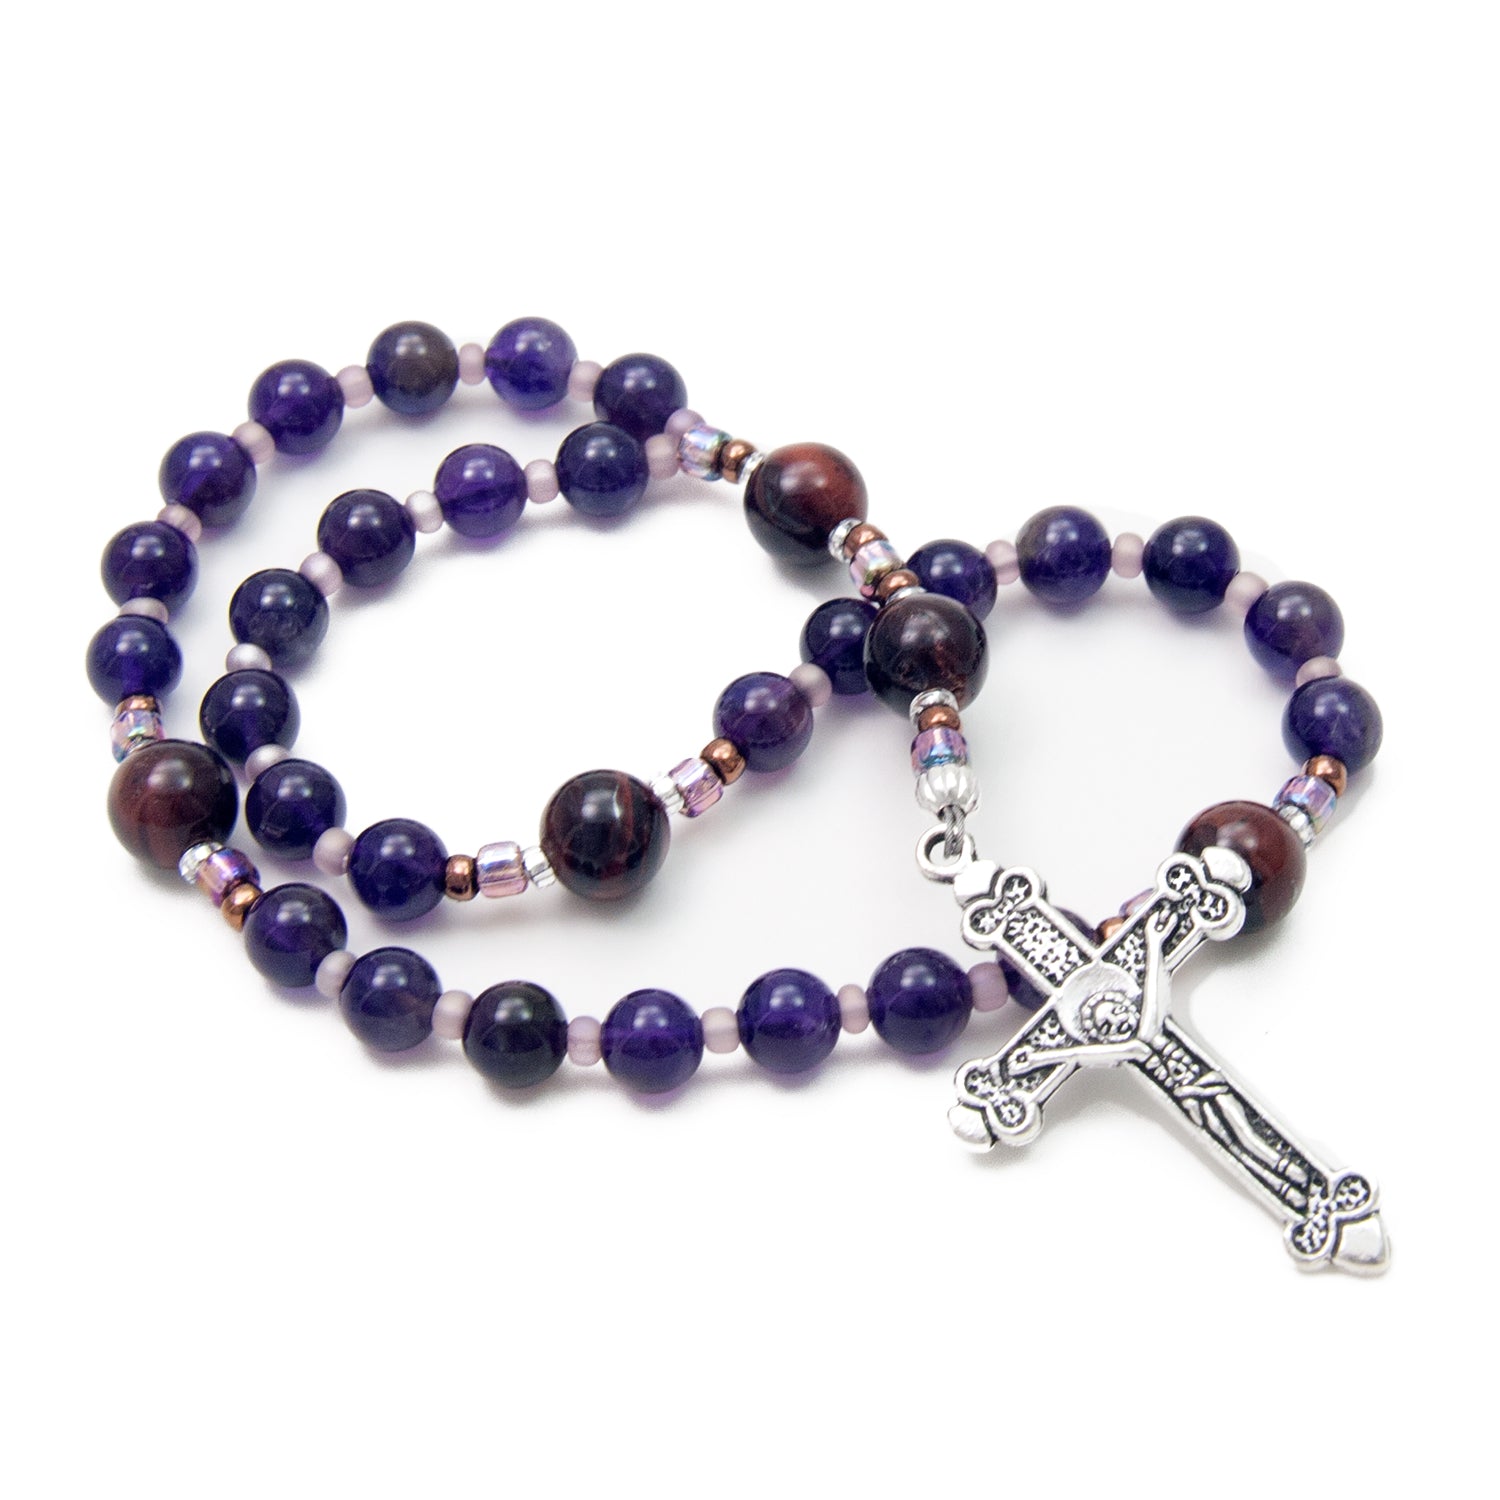 Faith Anglican Prayer Beads